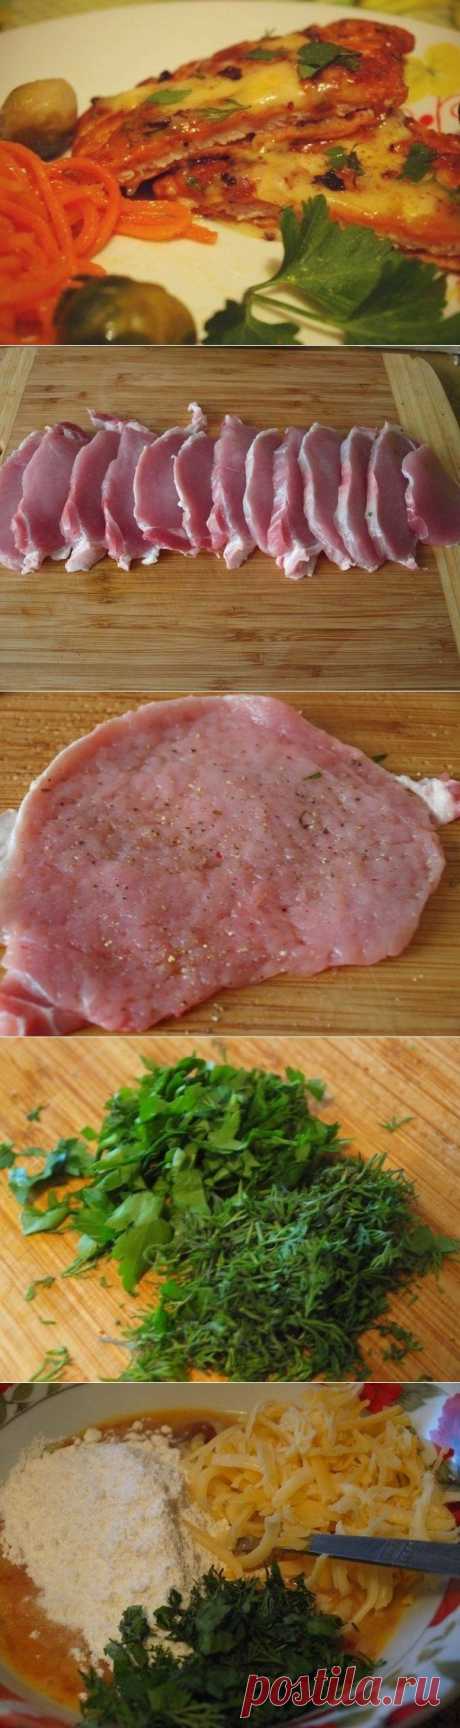 Как приготовить свинина по-румынски - рецепт, ингридиенты и фотографии